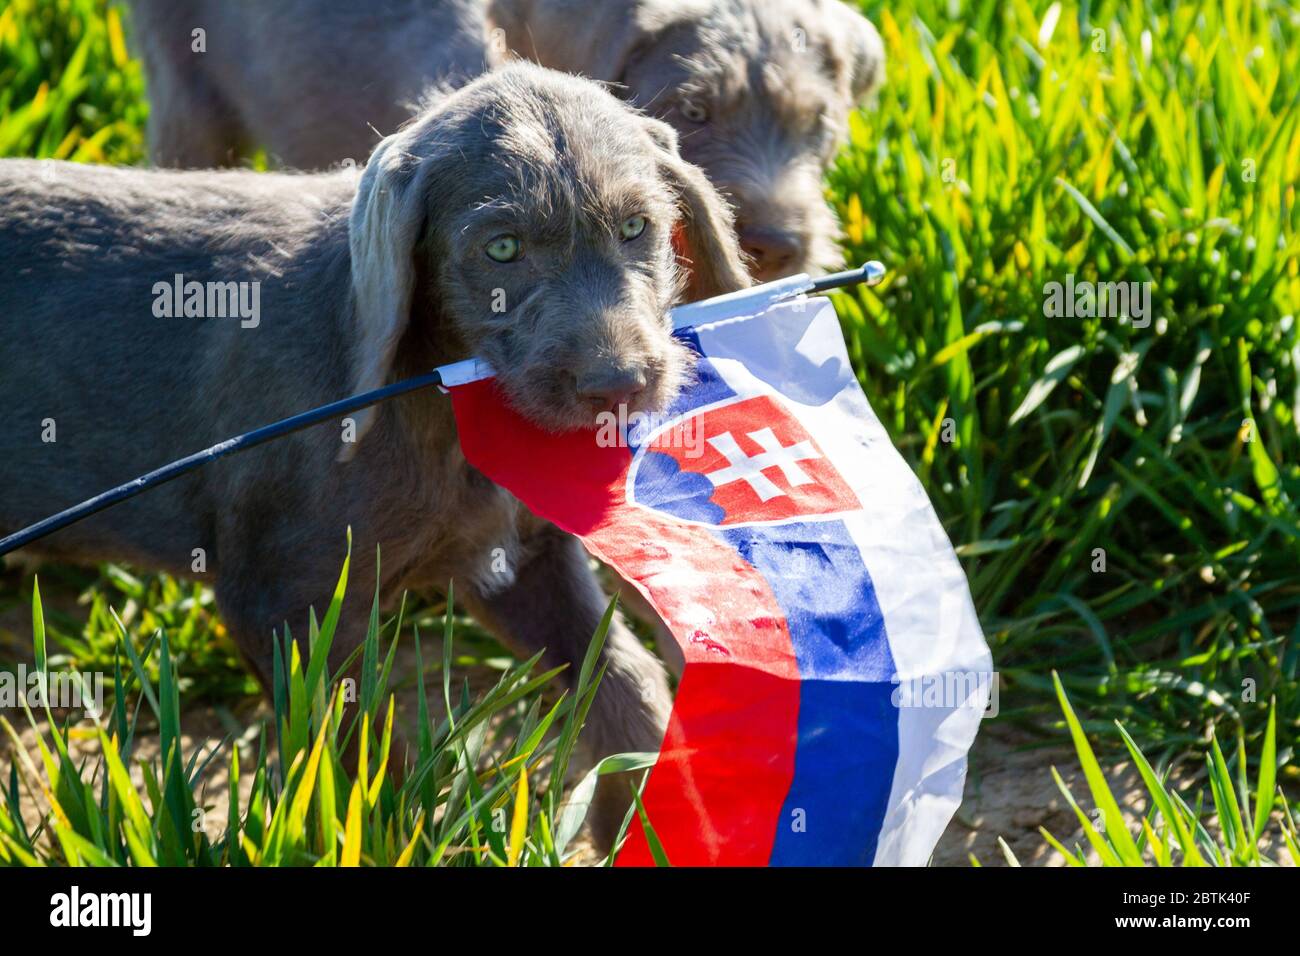 Cuccioli dai capelli grigi nell'erba che regge la bandiera slovacca. I cuccioli sono di razza: Slovacco puntino dai capelli ruvidi. Foto Stock